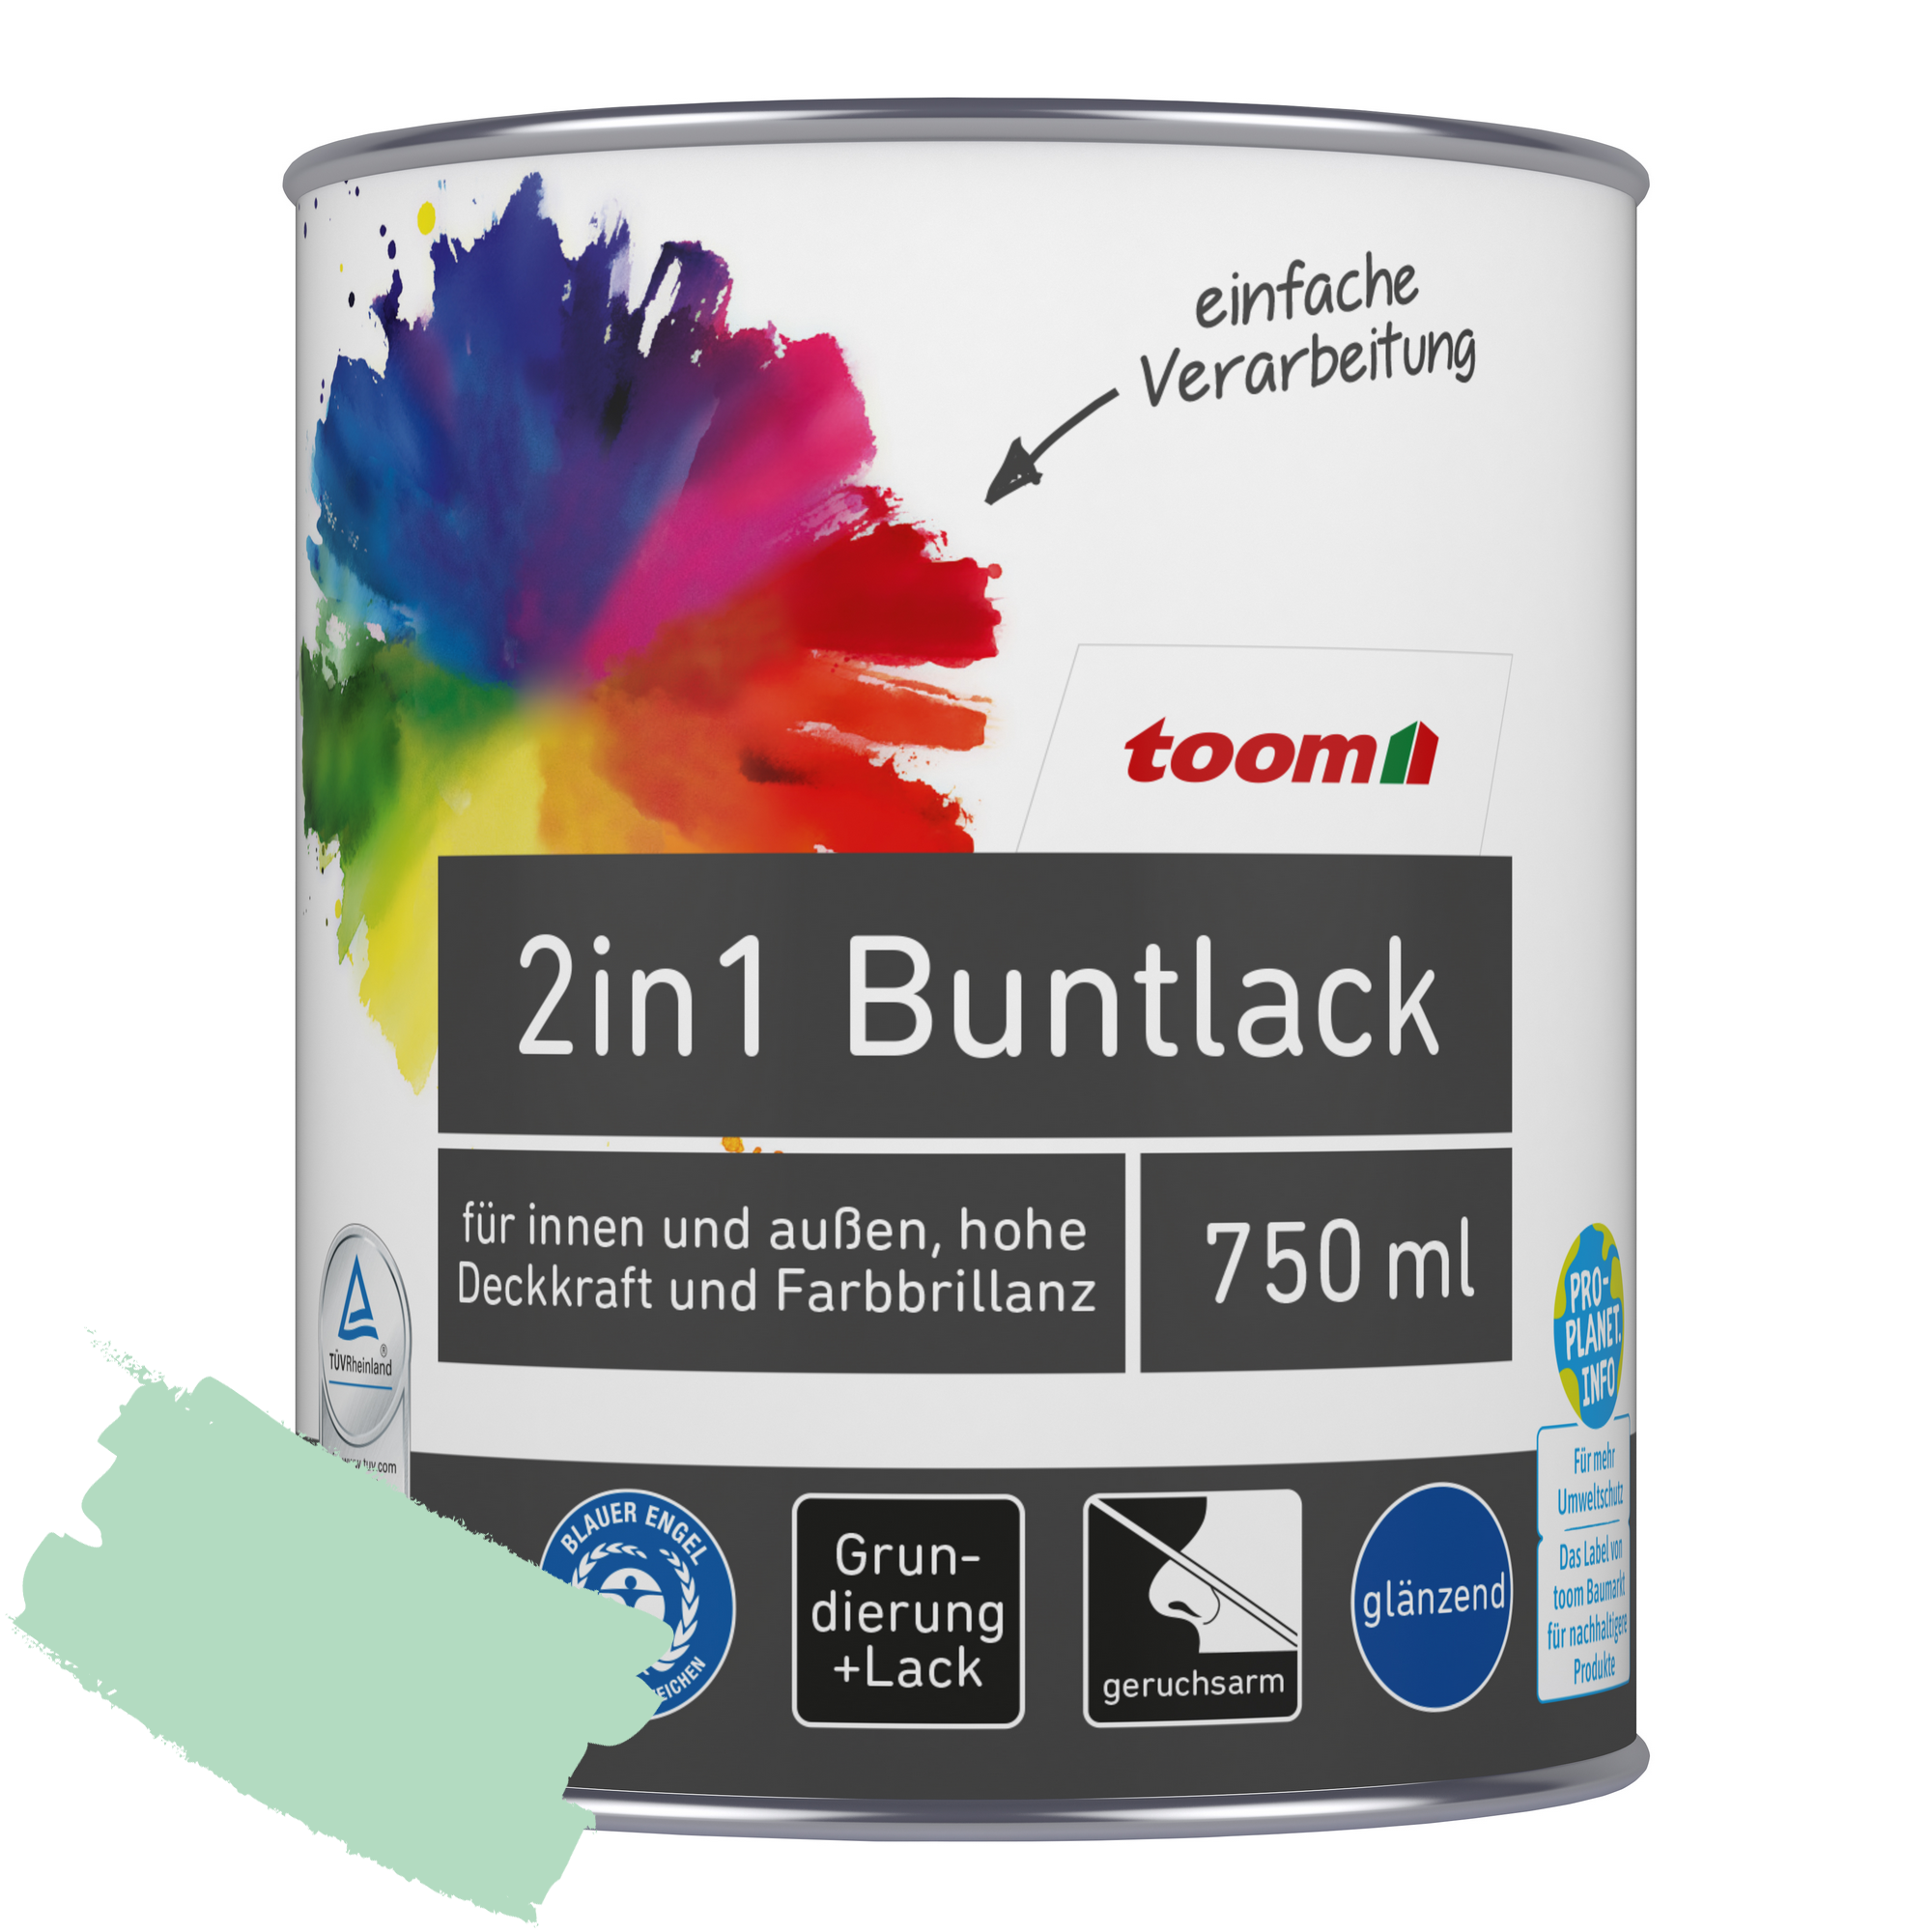 2in1 Buntlack minzgrün glänzend 750 ml + product picture